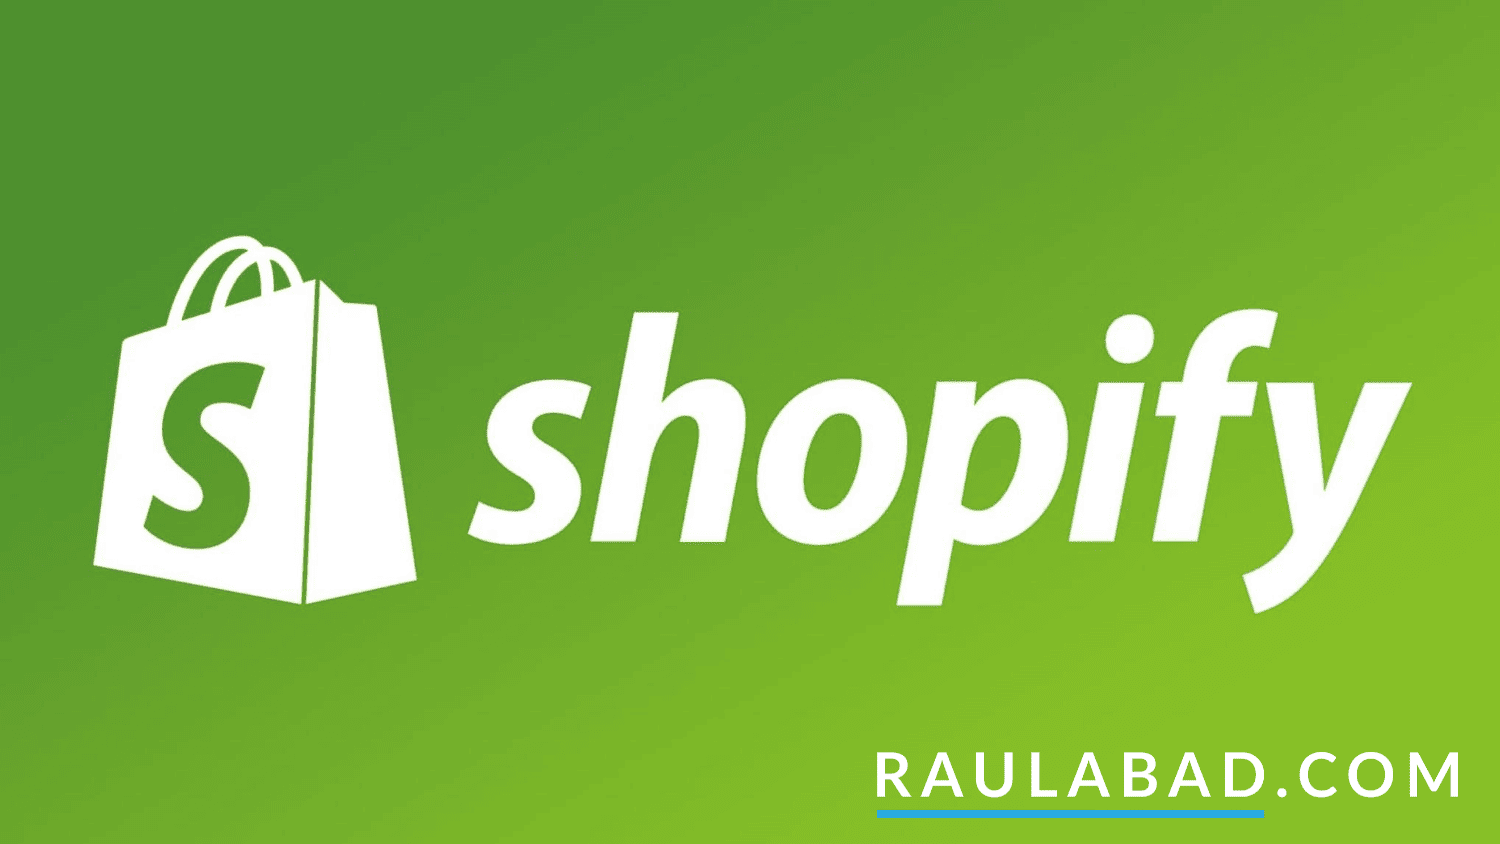 Consultor Experto en Shopify - Raúl Abad